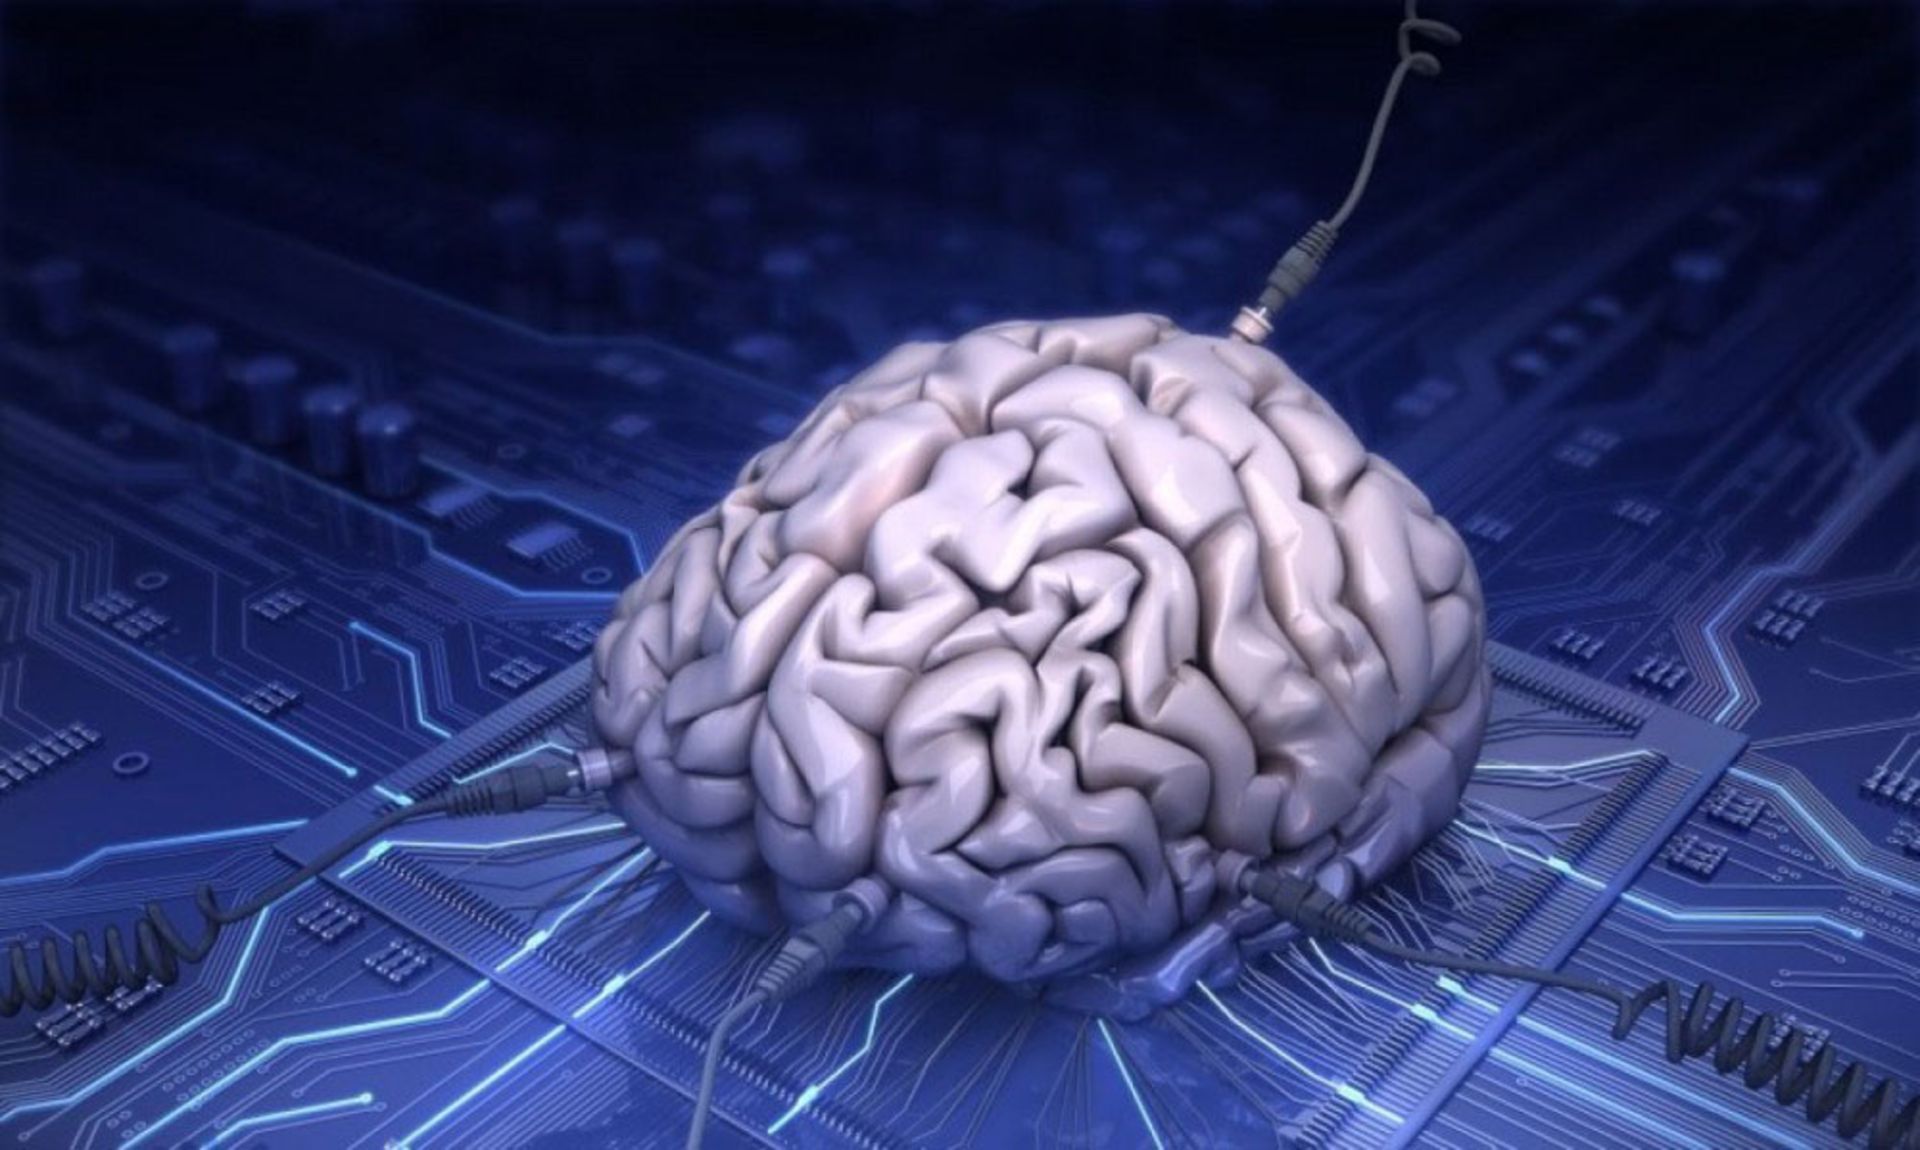 کامپیوتر شبیه به مغز انسان